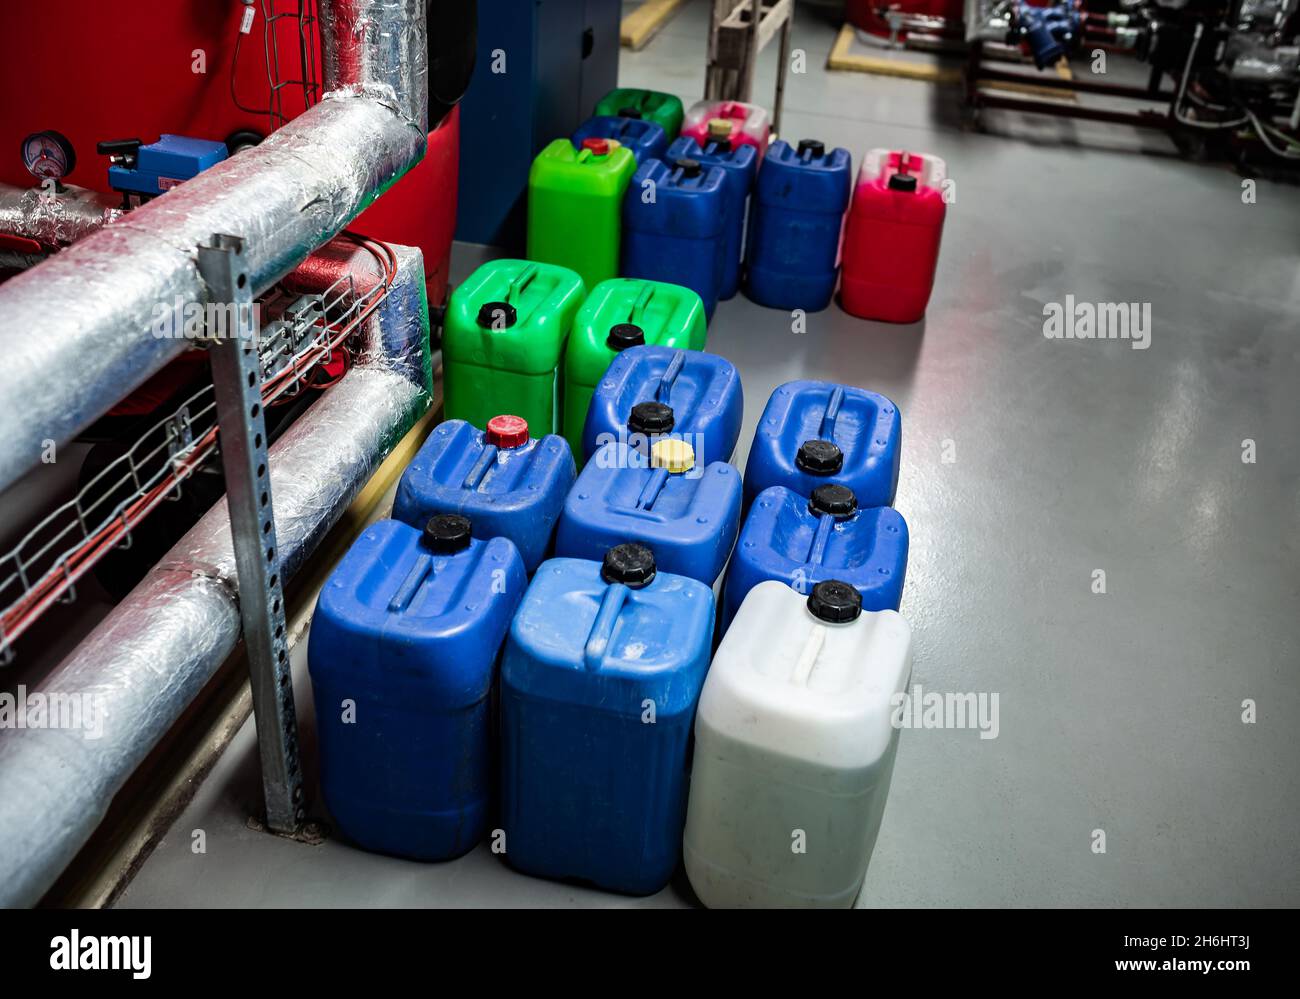 Barili con prodotti chimici in un magazzino chimico, contenitori colorati Foto Stock